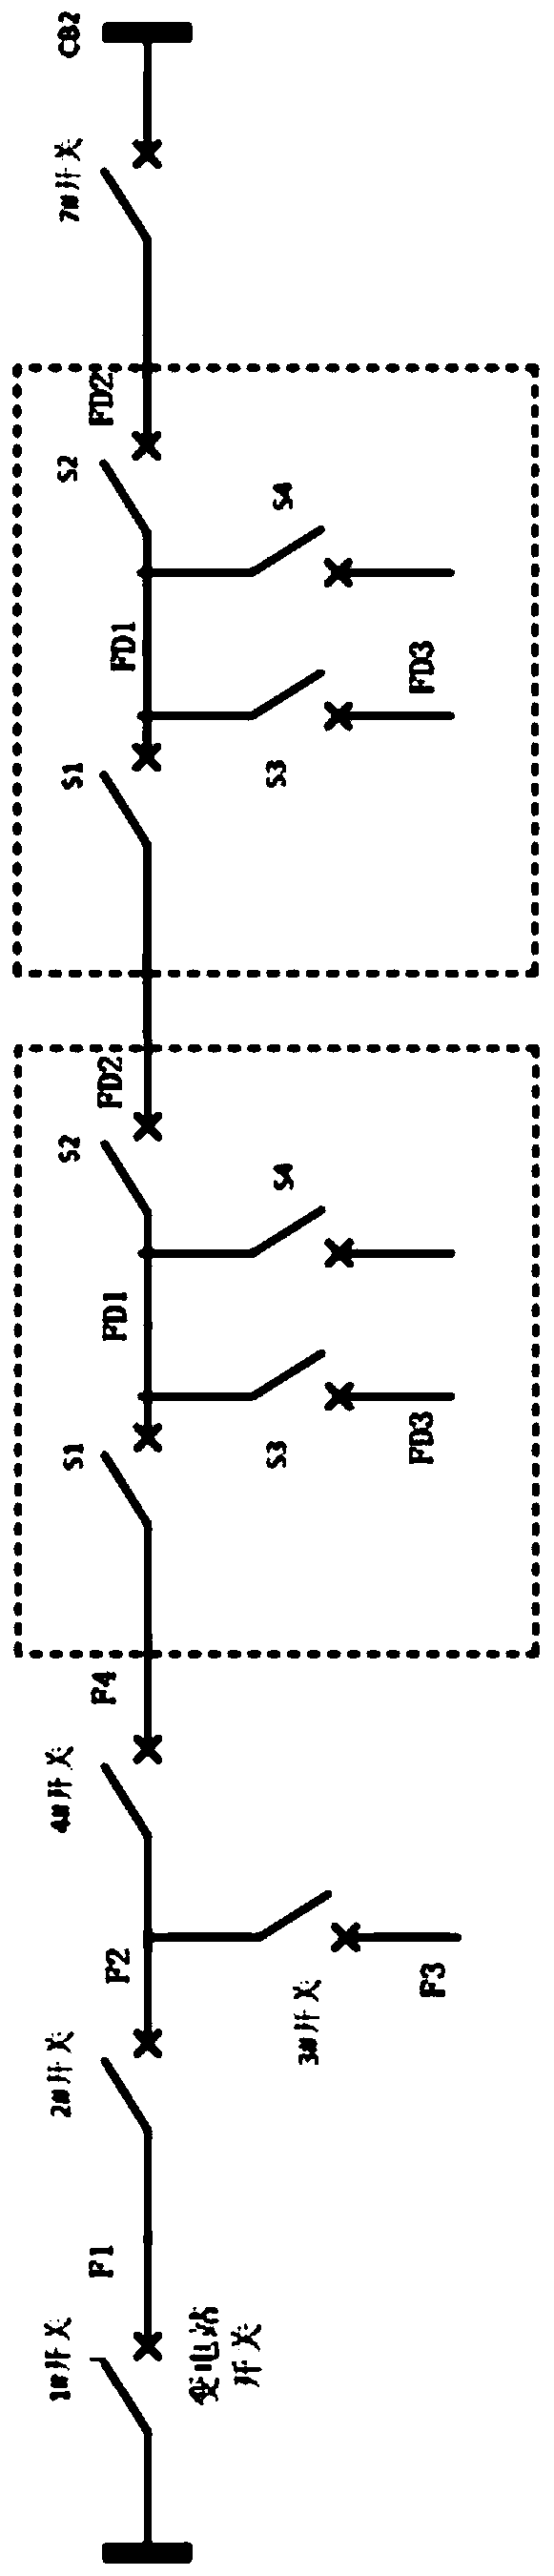 10kV line looped network power supply transfer method